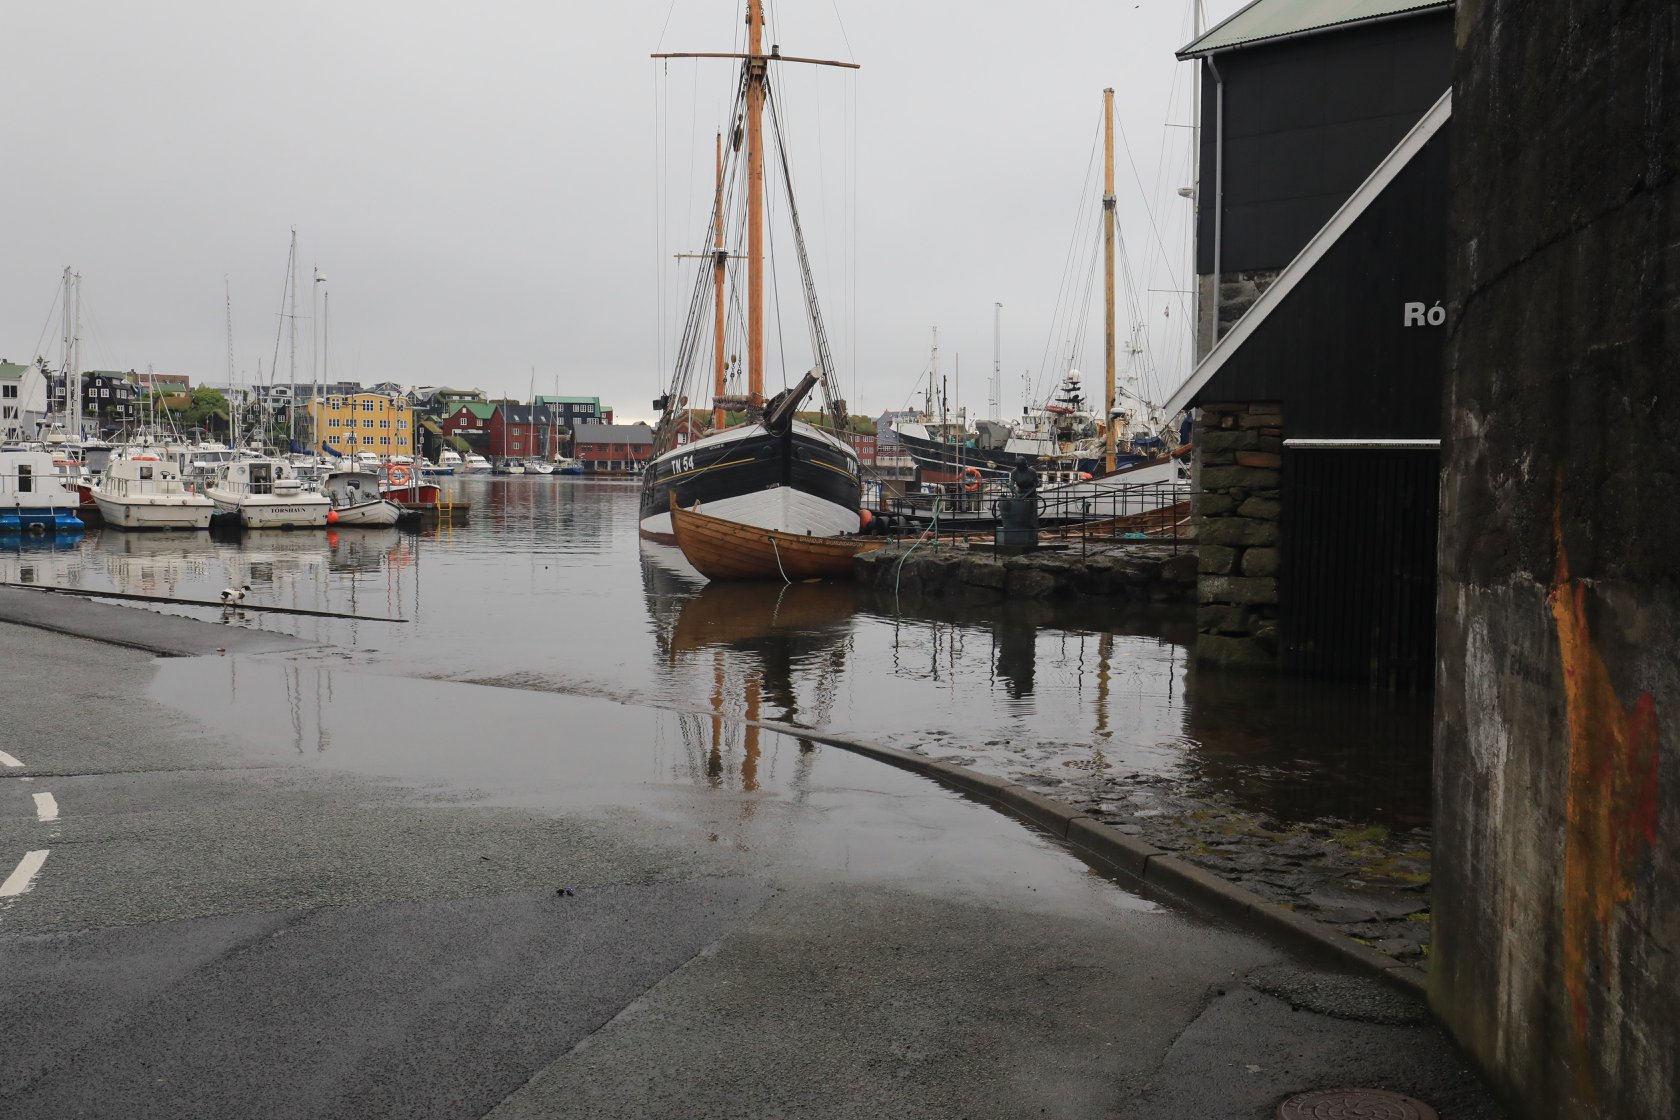 Boats in the harbor of Tórshavn